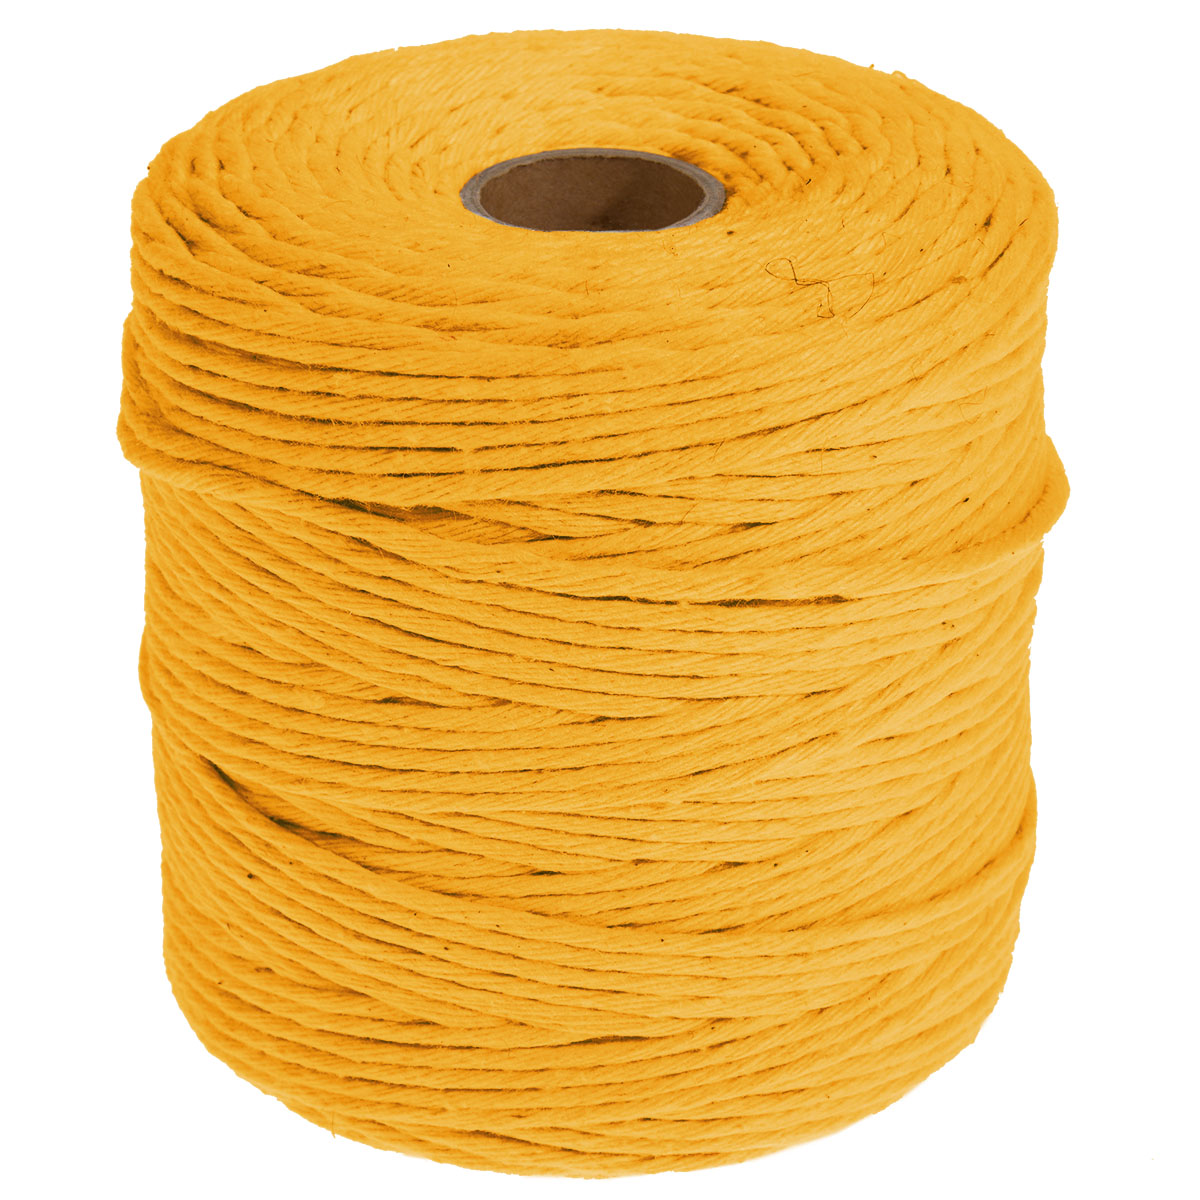 Makramee Band 3mm x 200 m Länge Makramee Garn aus 100% Baumwolle gelb